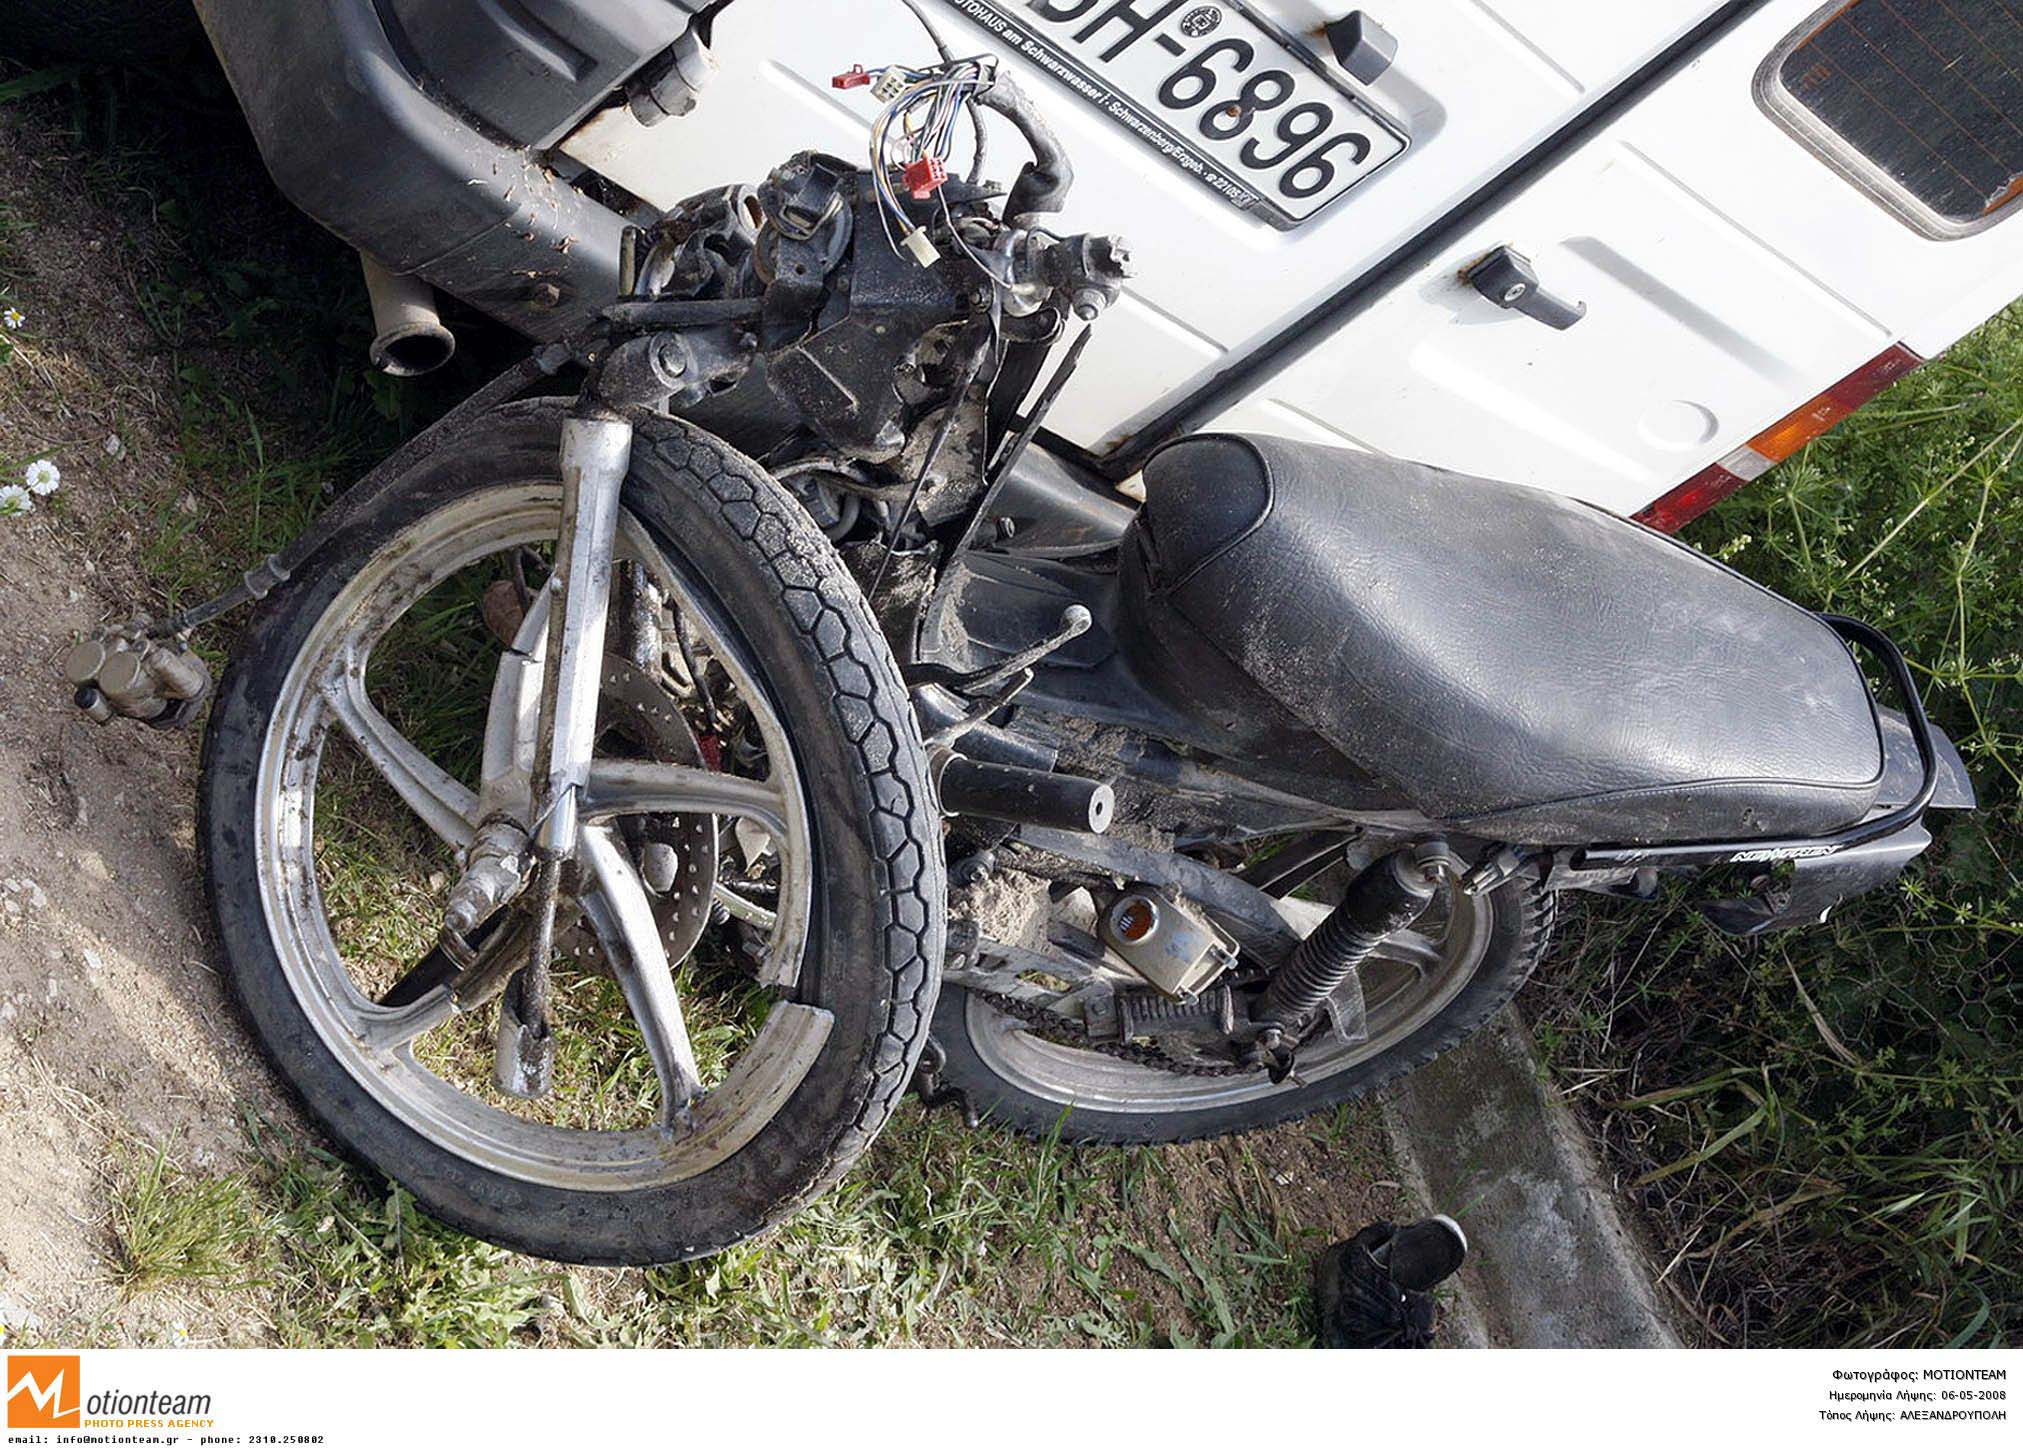 Νεκρός μοτοσικλετιστής σε τροχαίο δυστύχημα έξω από τη Θεσσαλονίκη